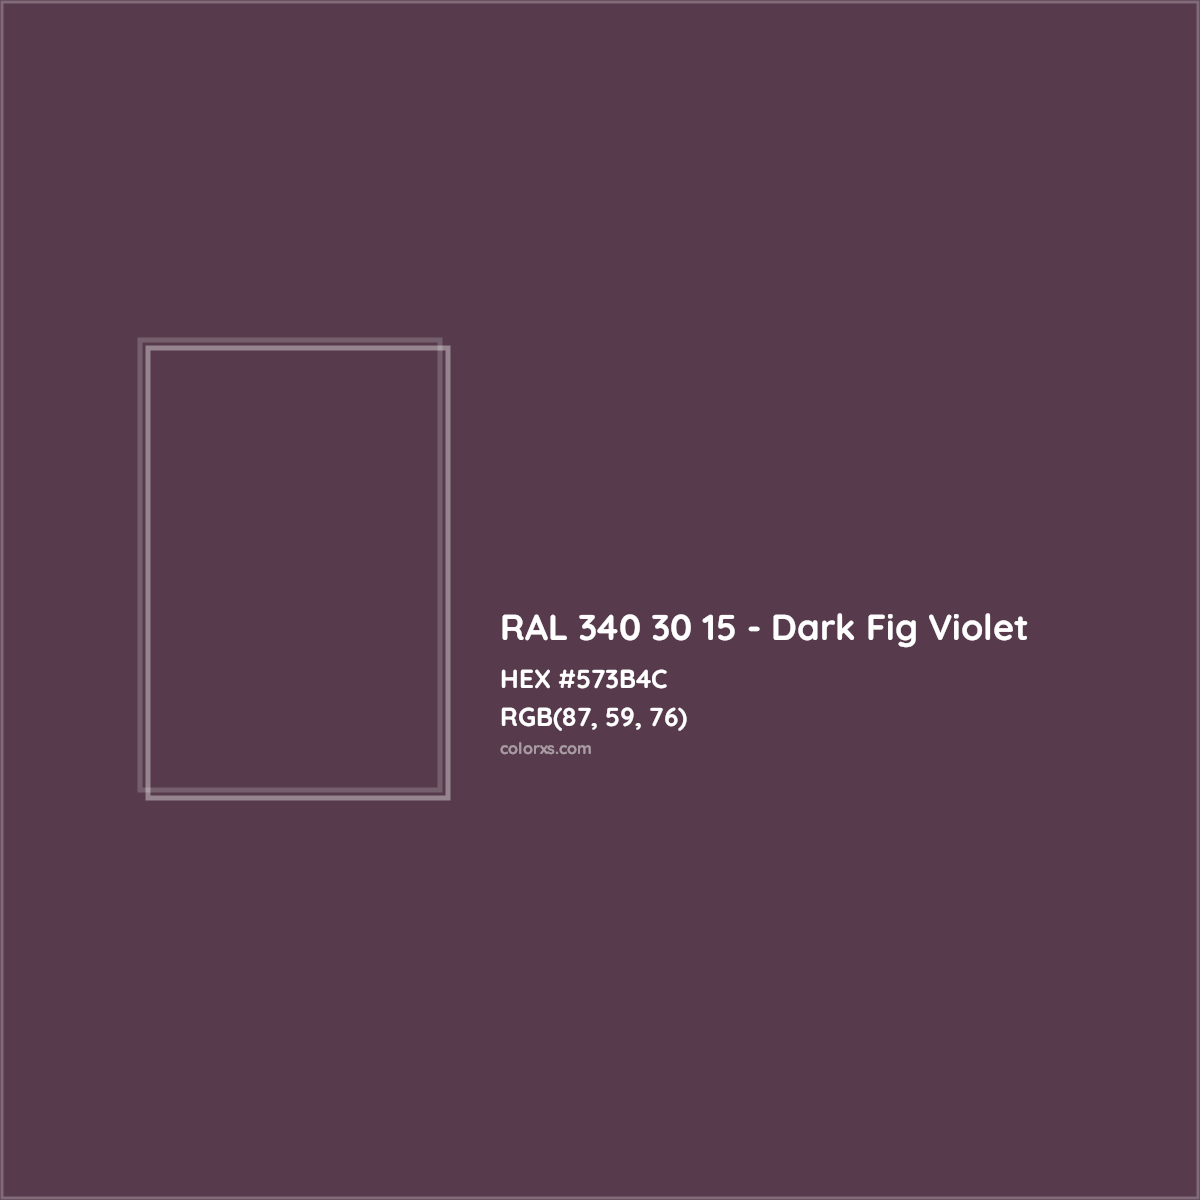 HEX #573B4C RAL 340 30 15 - Dark Fig Violet CMS RAL Design - Color Code